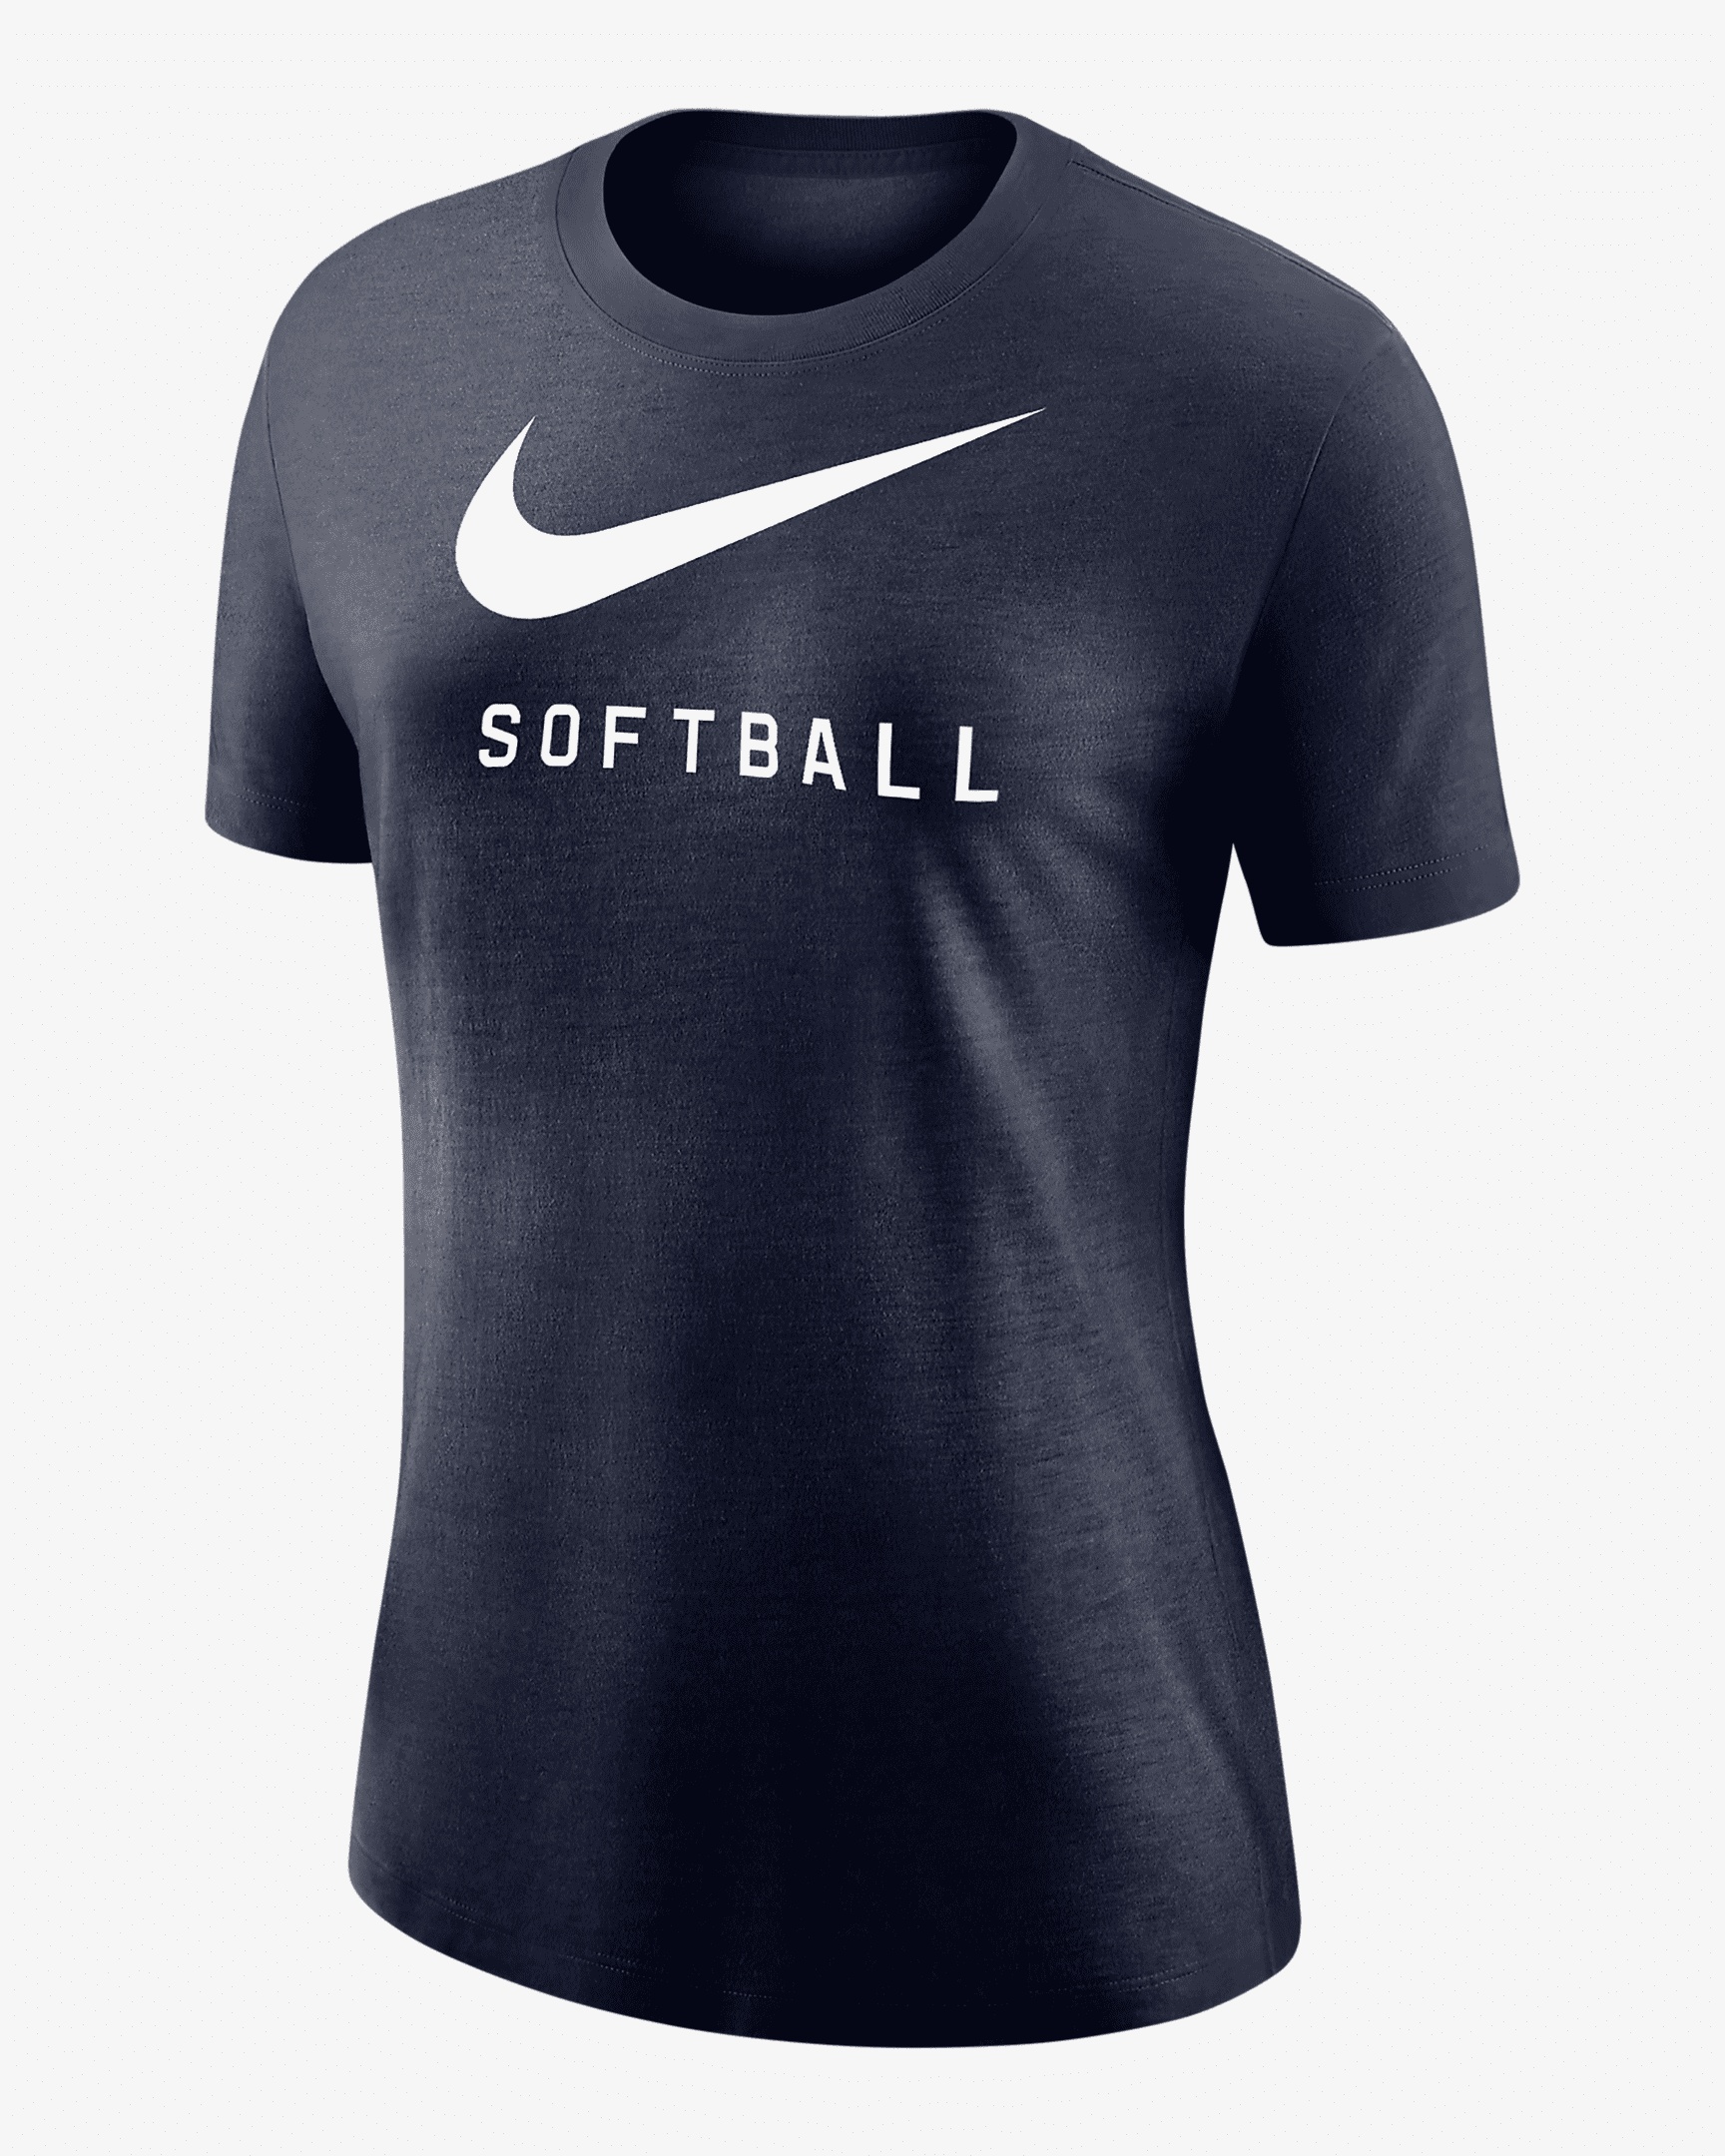 Nike Women's Swoosh T-Shirt - 1